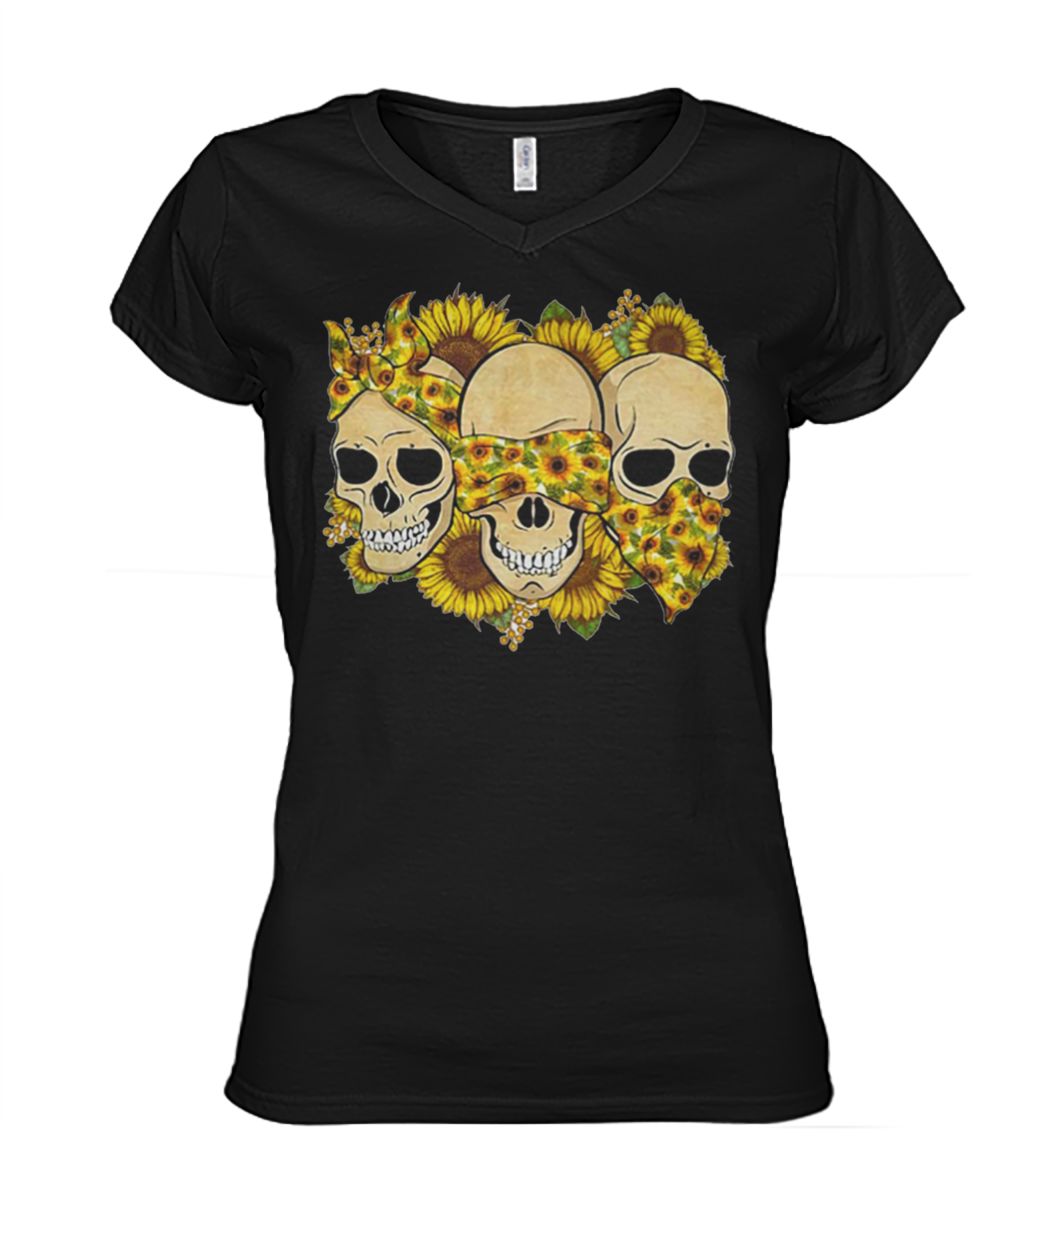 Skulls sunflower floral flowers women's v-neck